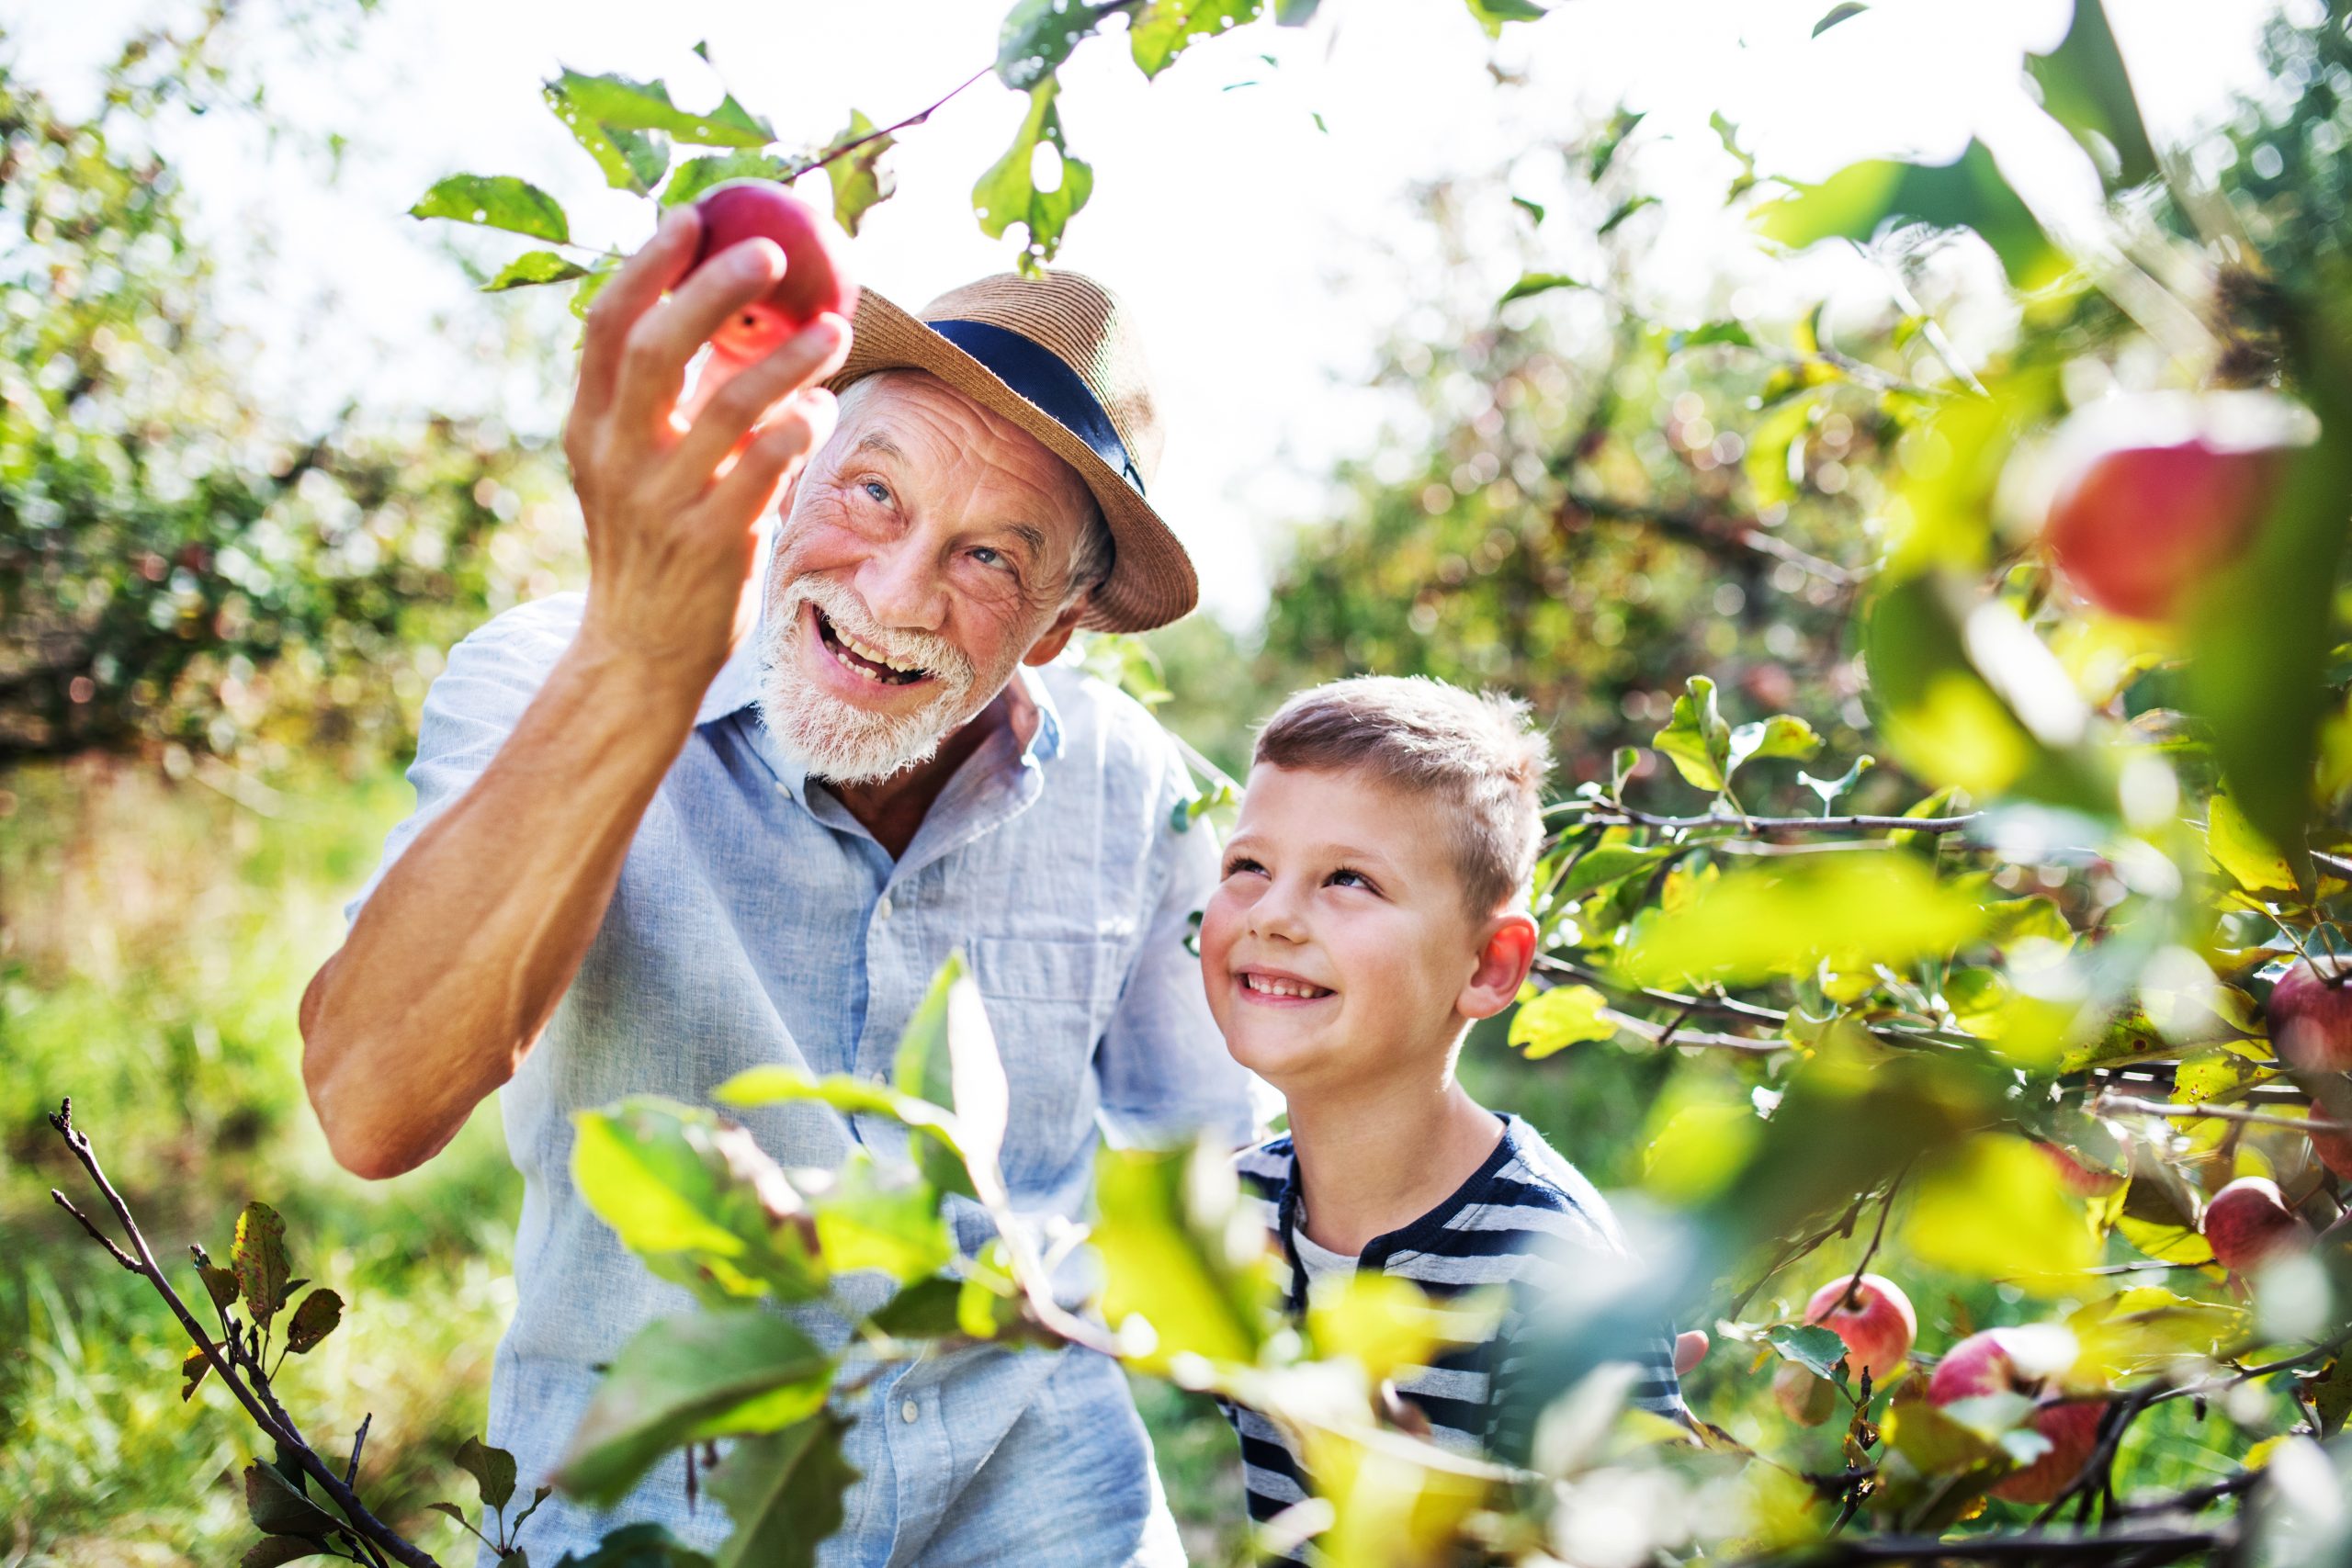 Äldre man och ung pojke som plockar äpplen i solen.